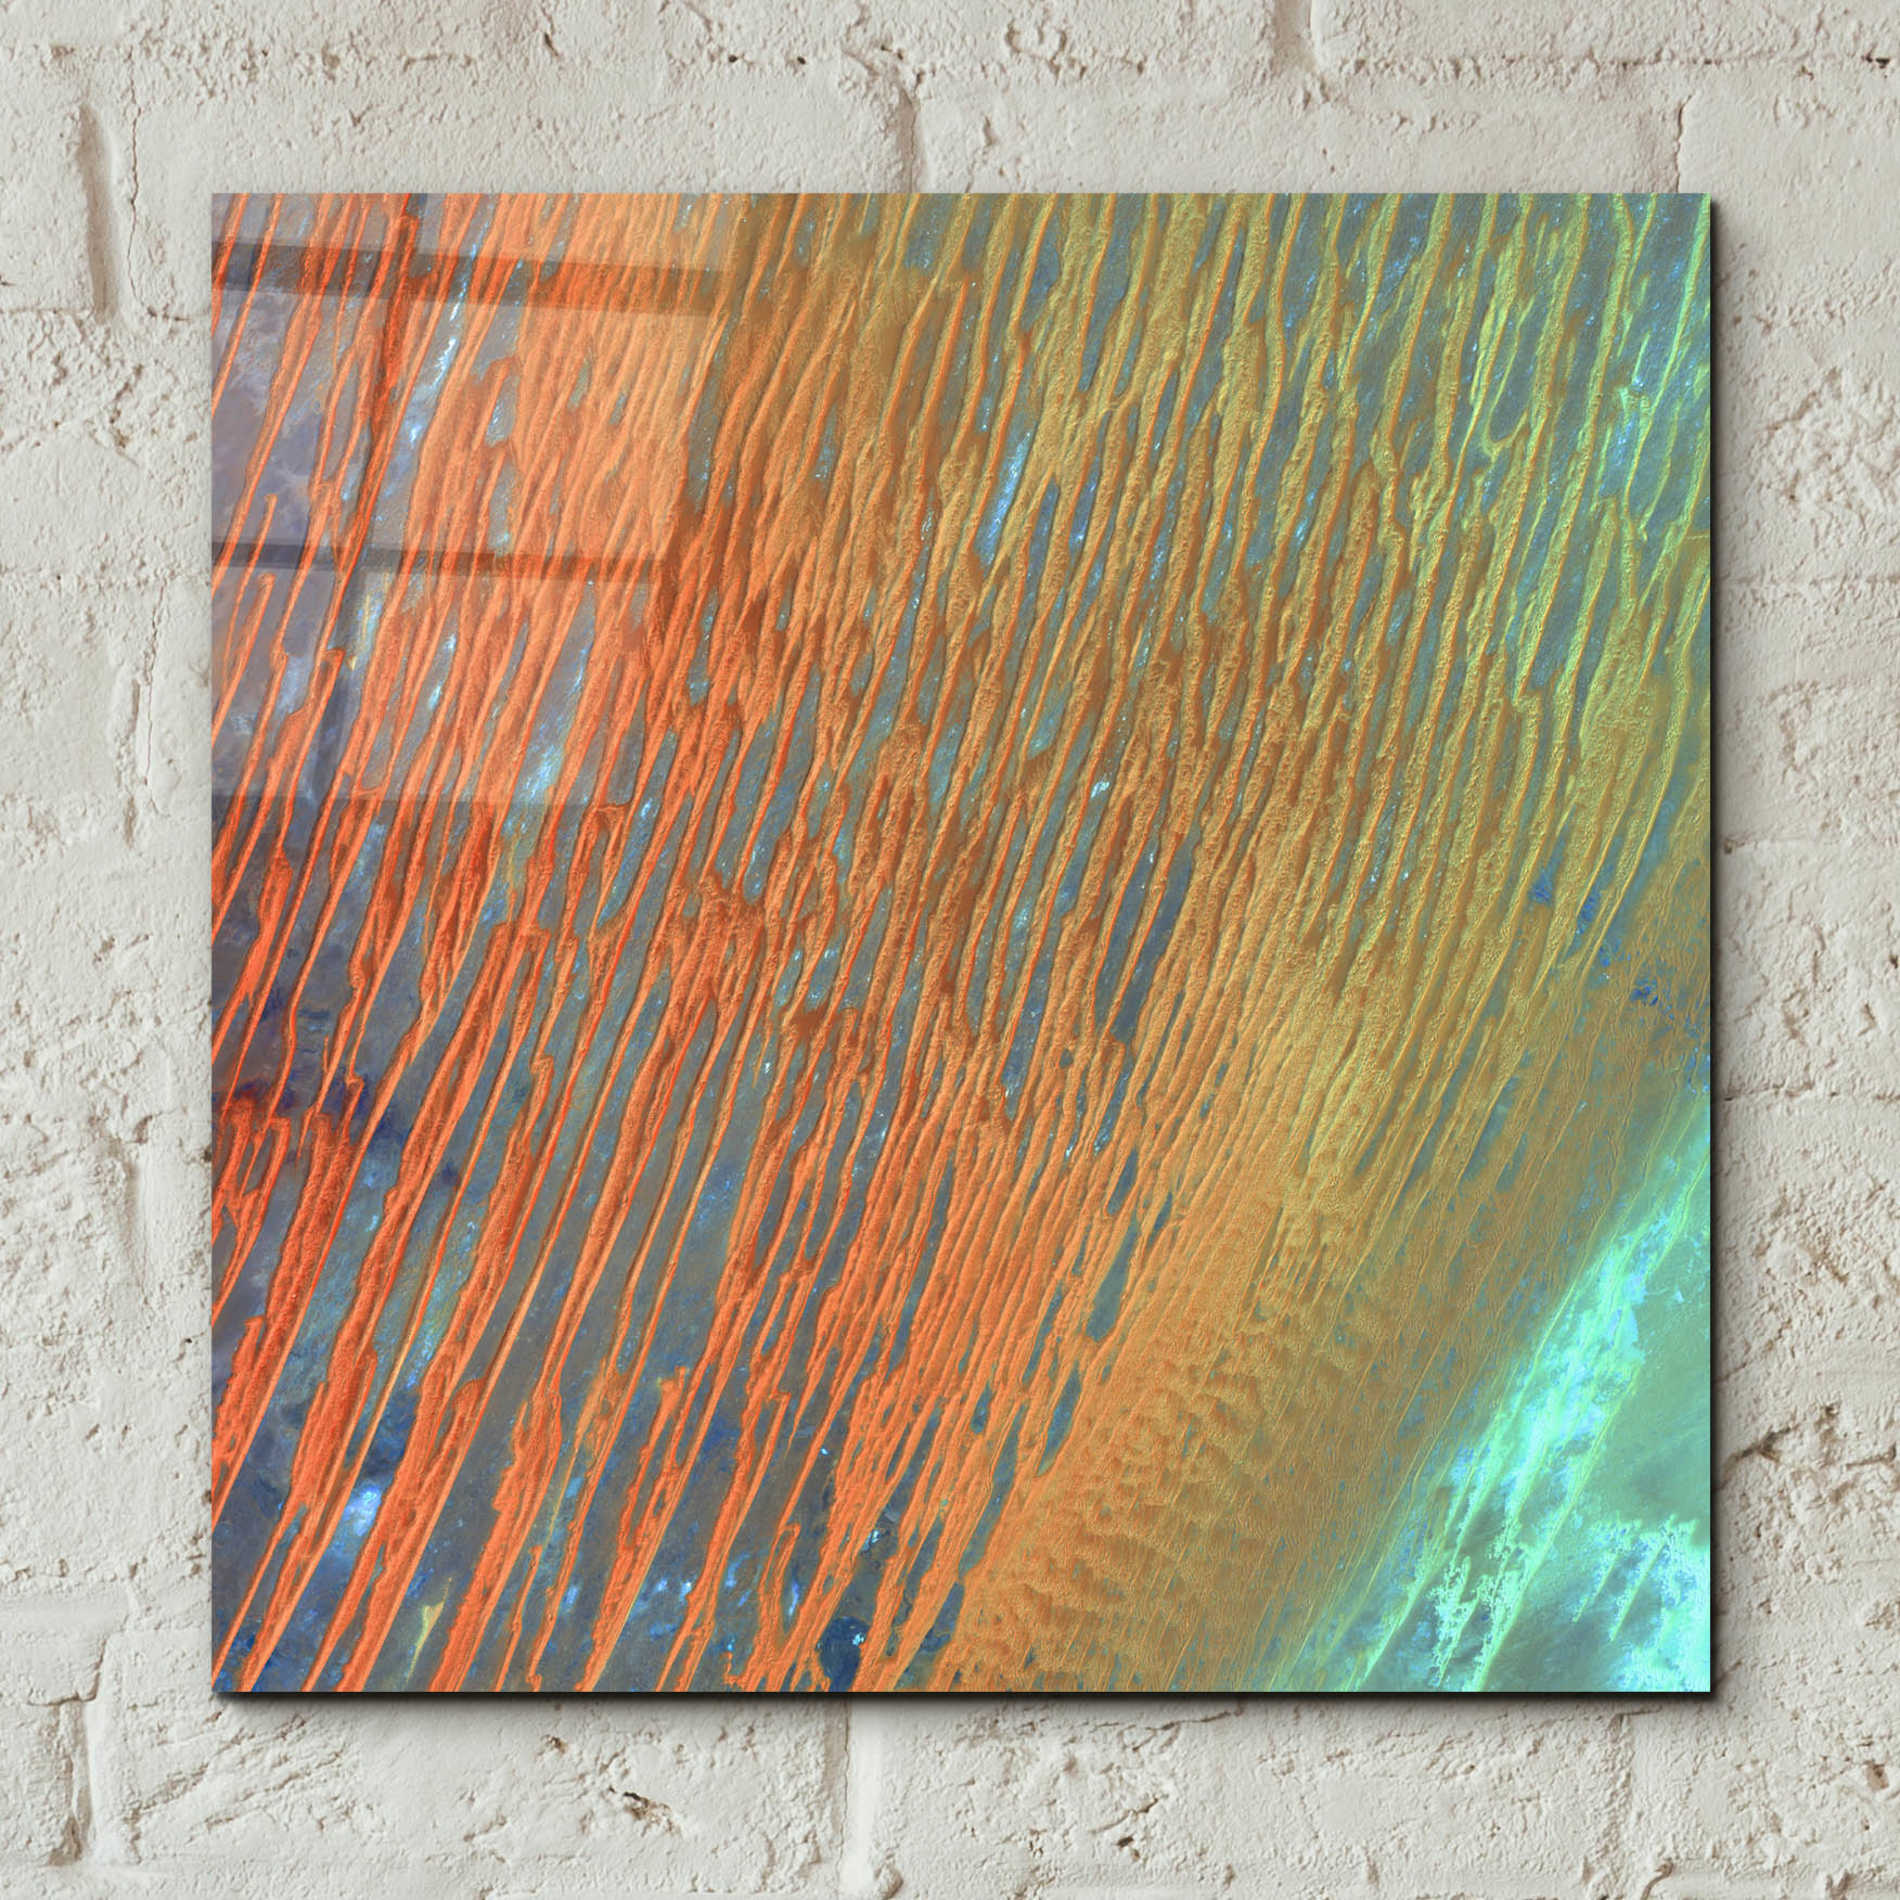 Epic Art 'Earth as Art: Desert Patterns,' Acrylic Glass Wall Art,12x12